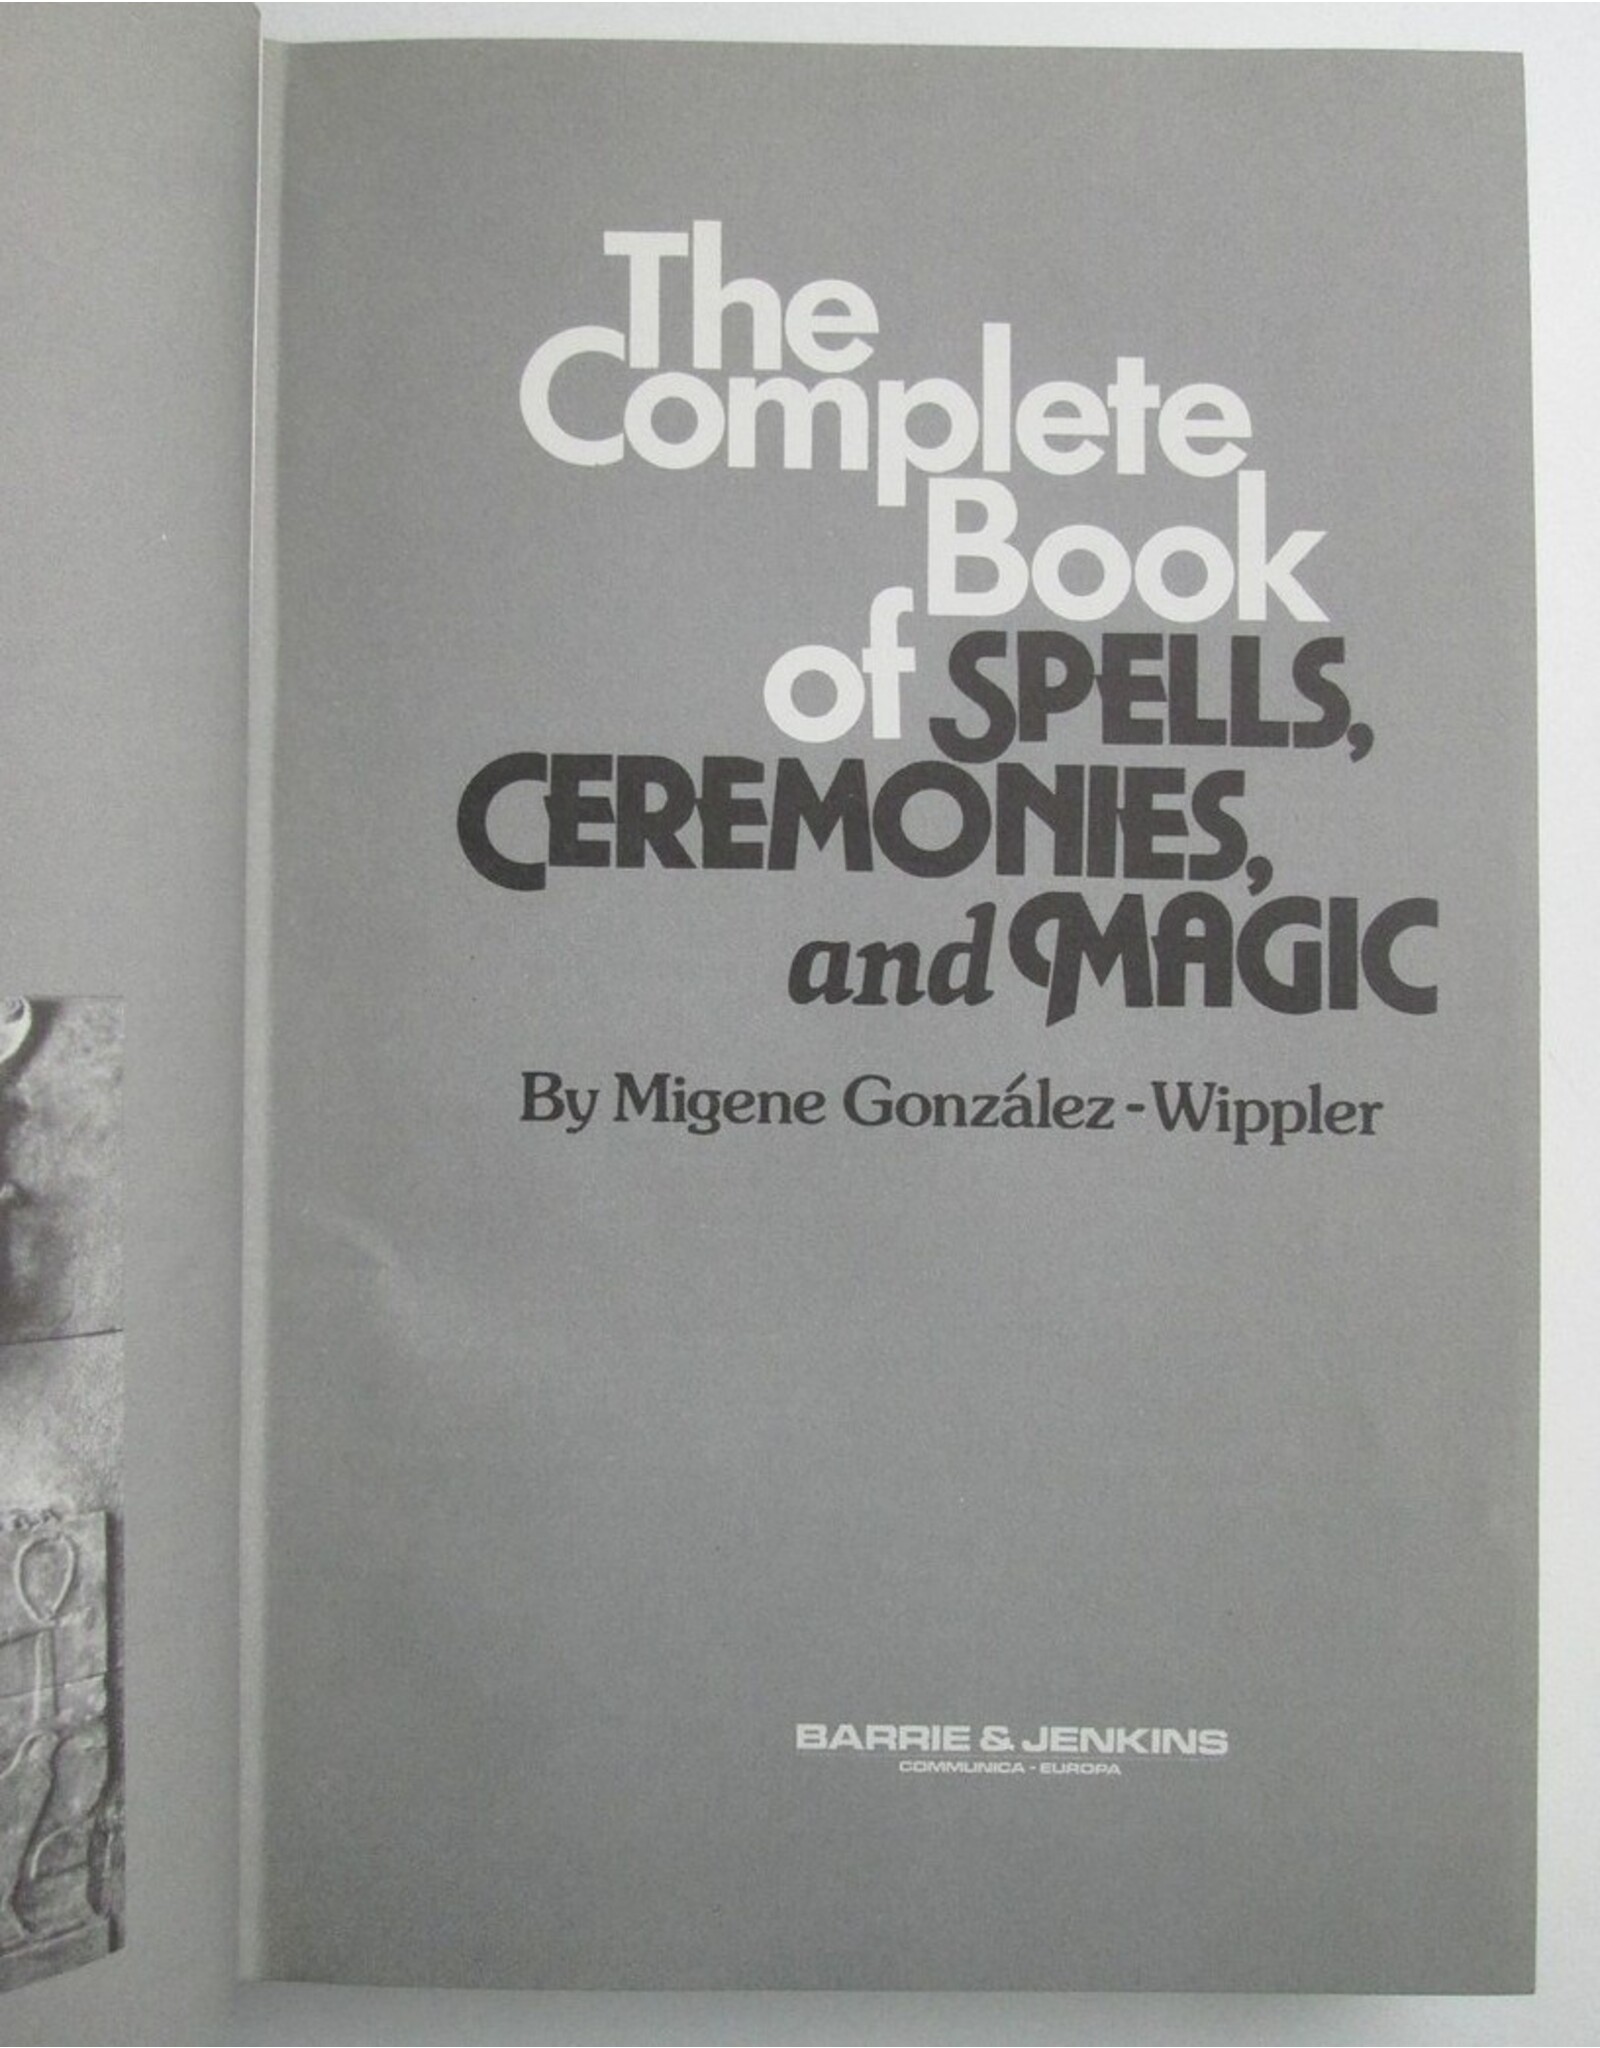 Migene Gonzalez-Wippler - The Complete Book of Spells, Ceremonies and Magic